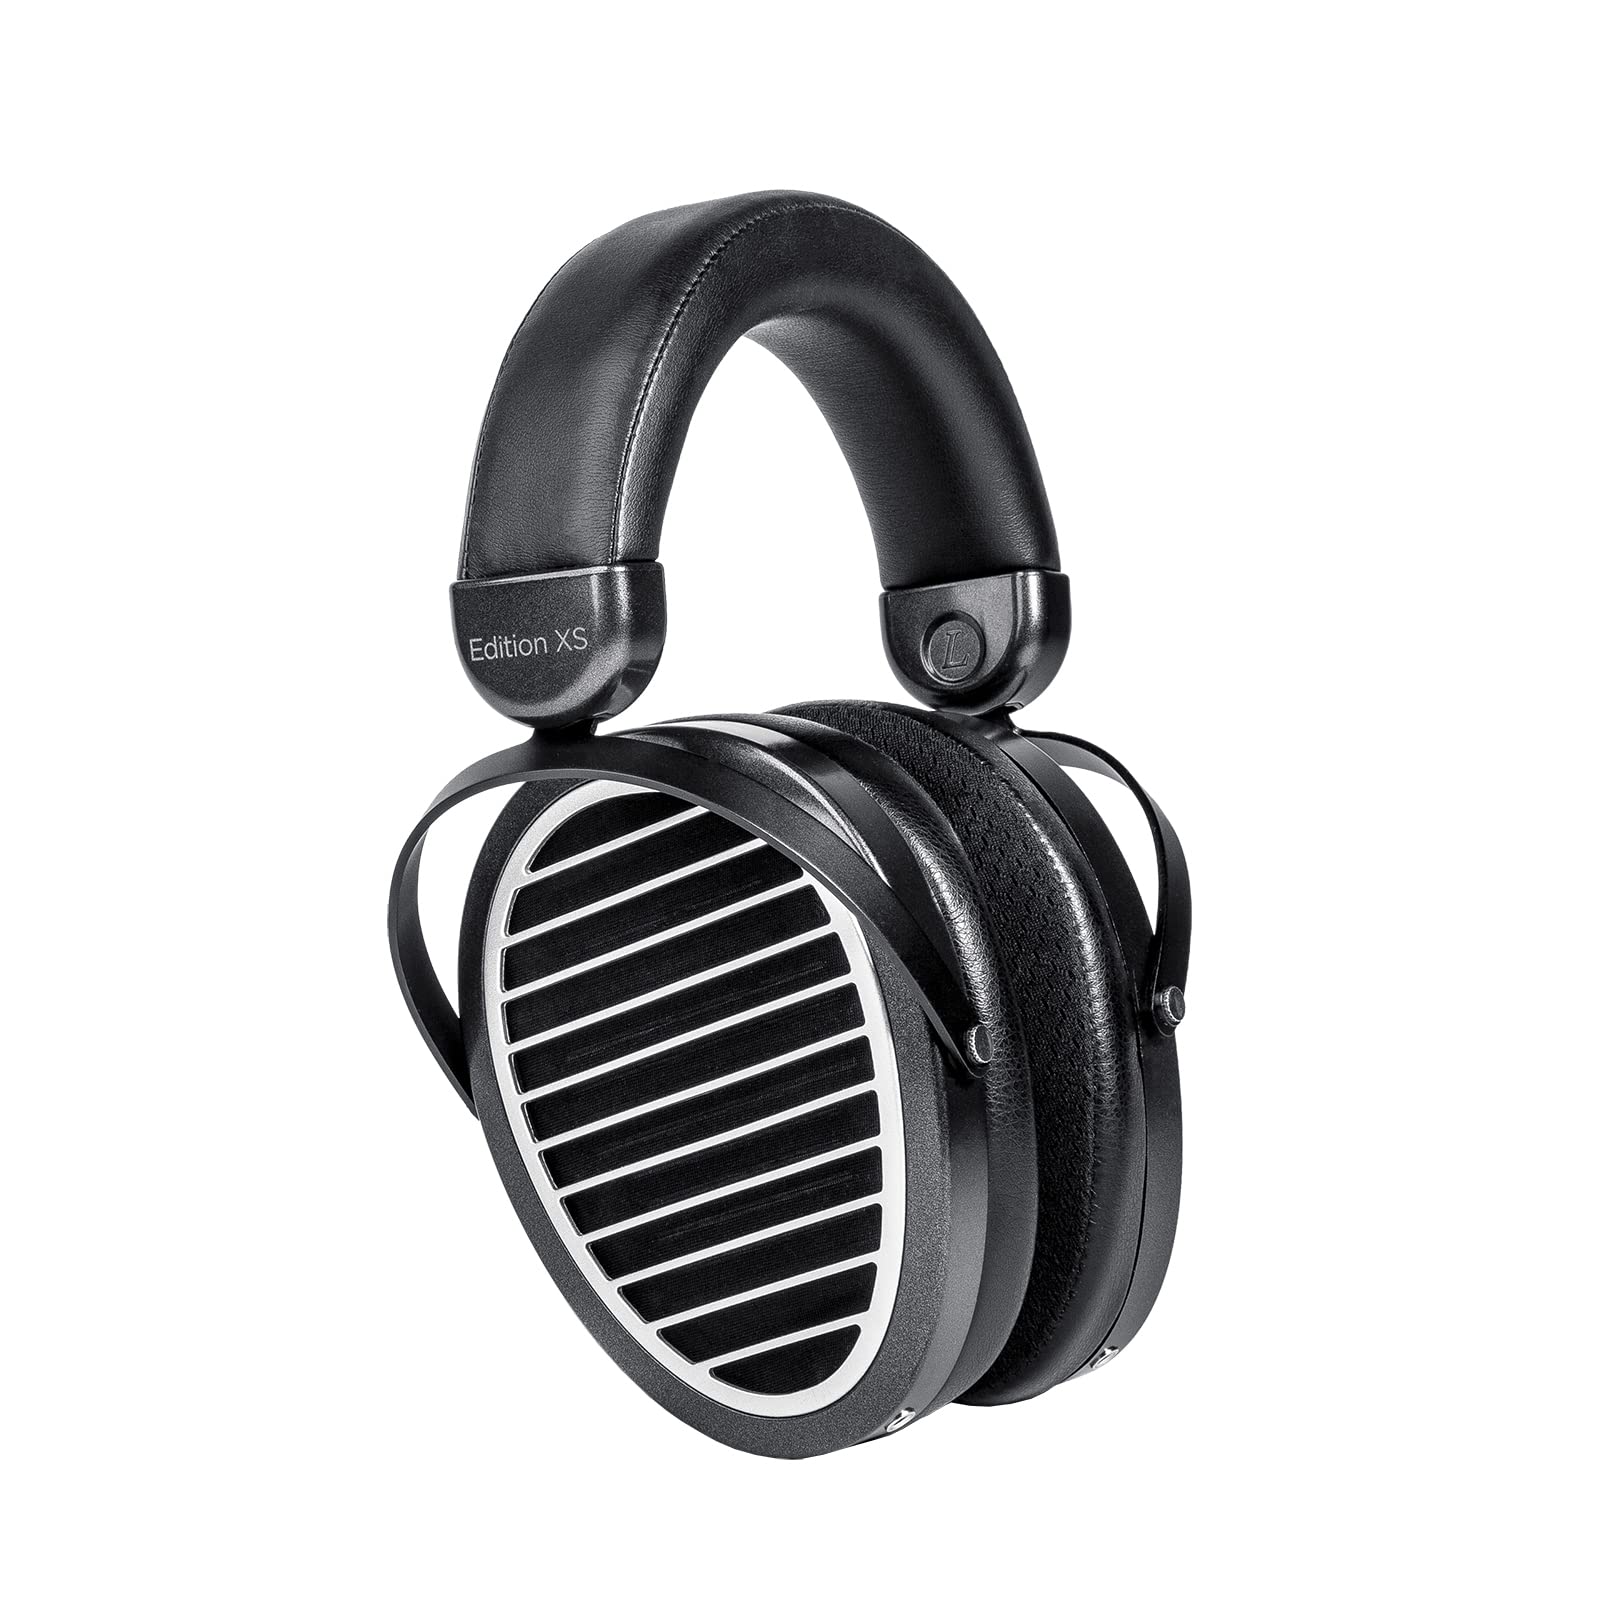 HIFIMAN XS 版全尺寸包耳式开放式平面磁性高保真耳机，带隐形磁铁设计、可调节头带、可拆卸线缆，适合发烧友、家用、录音室-黑色